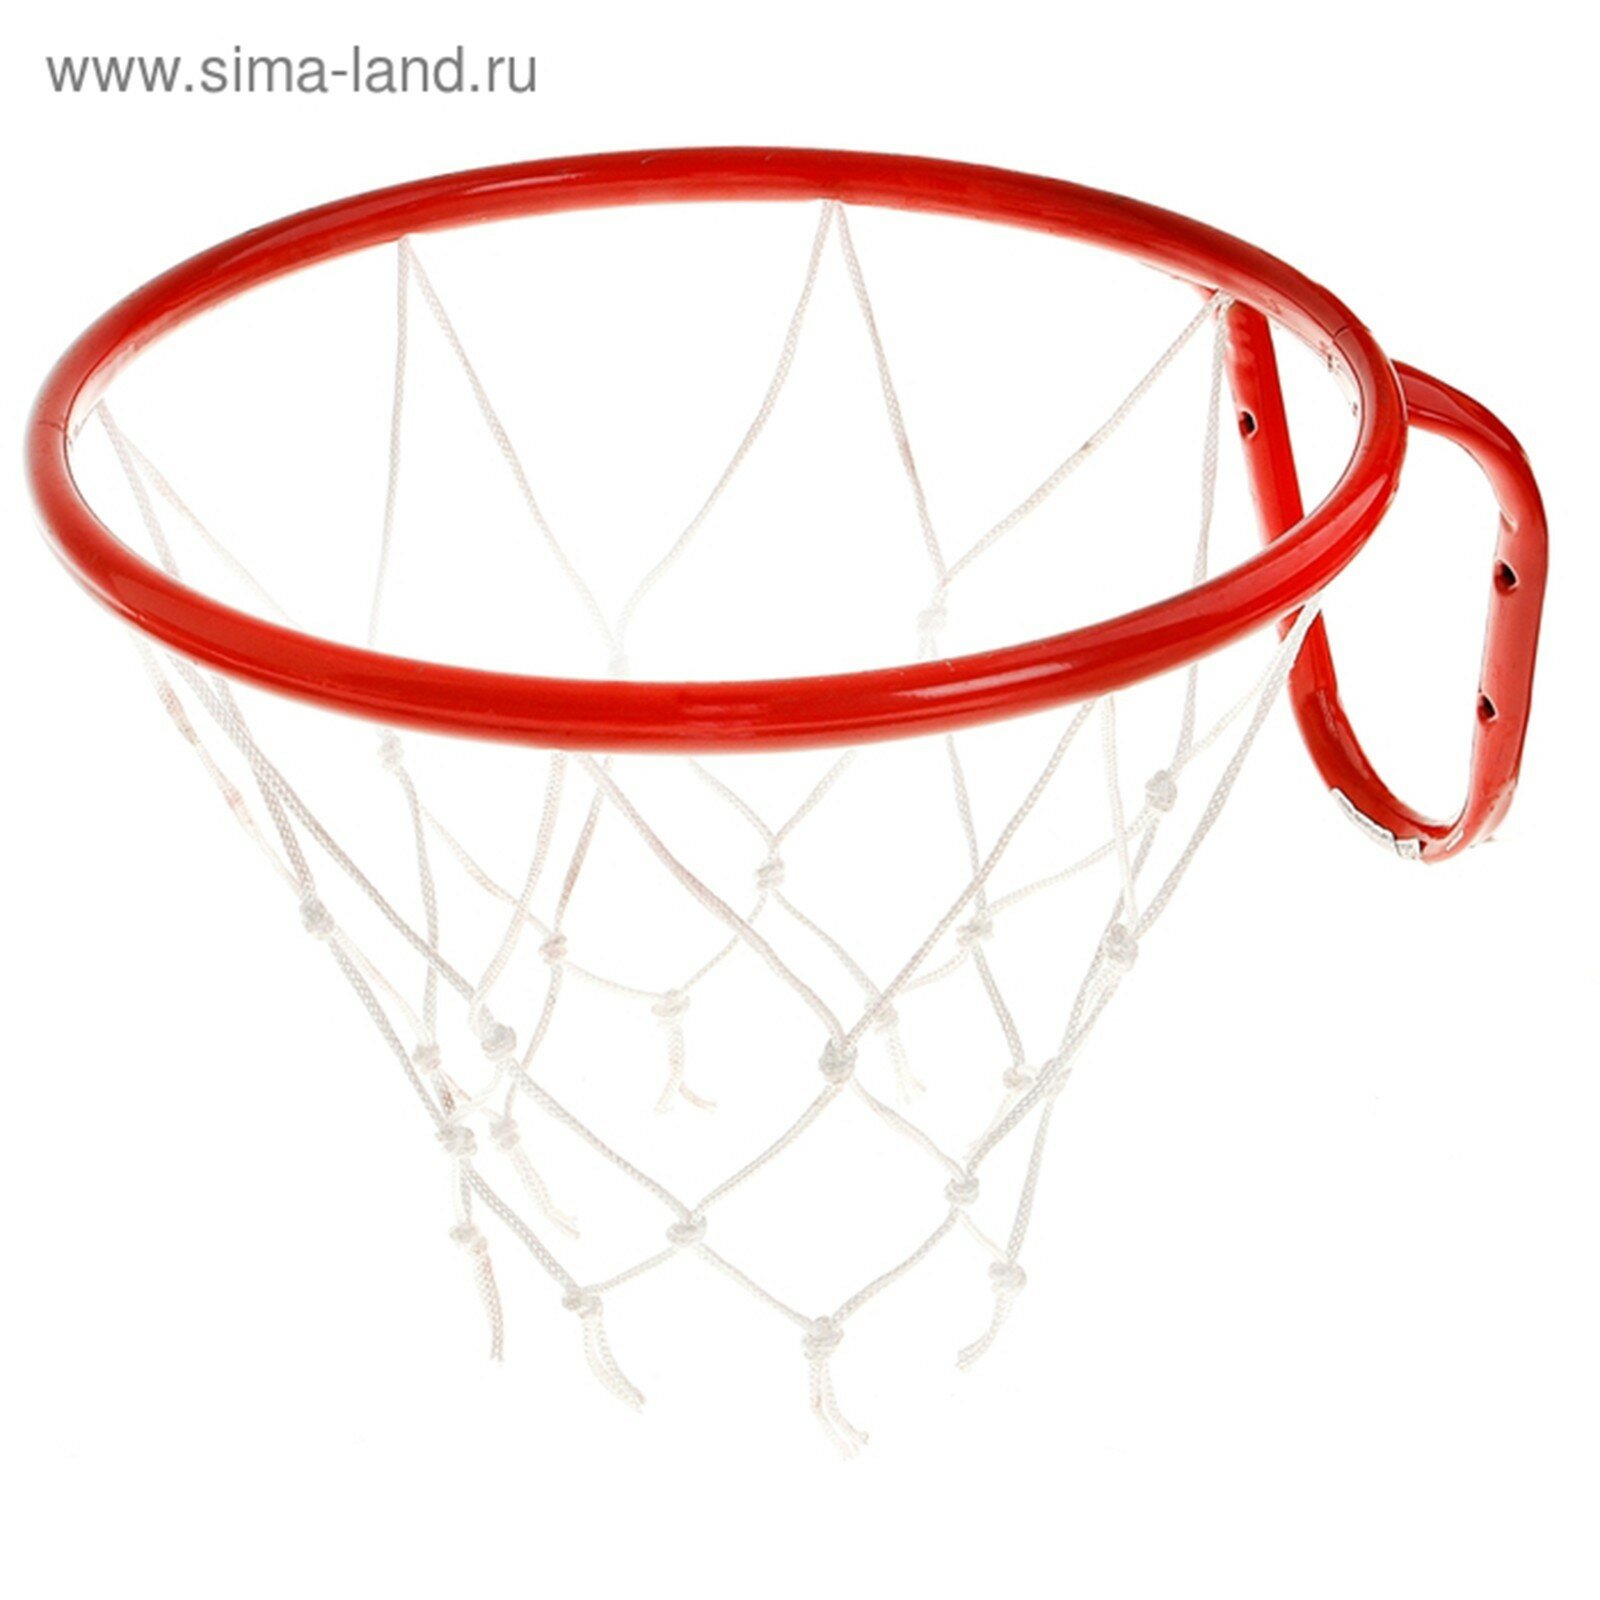 Корзина баскетбольная №5, d 380мм, с сеткой КБ5 27020500-КБ-03